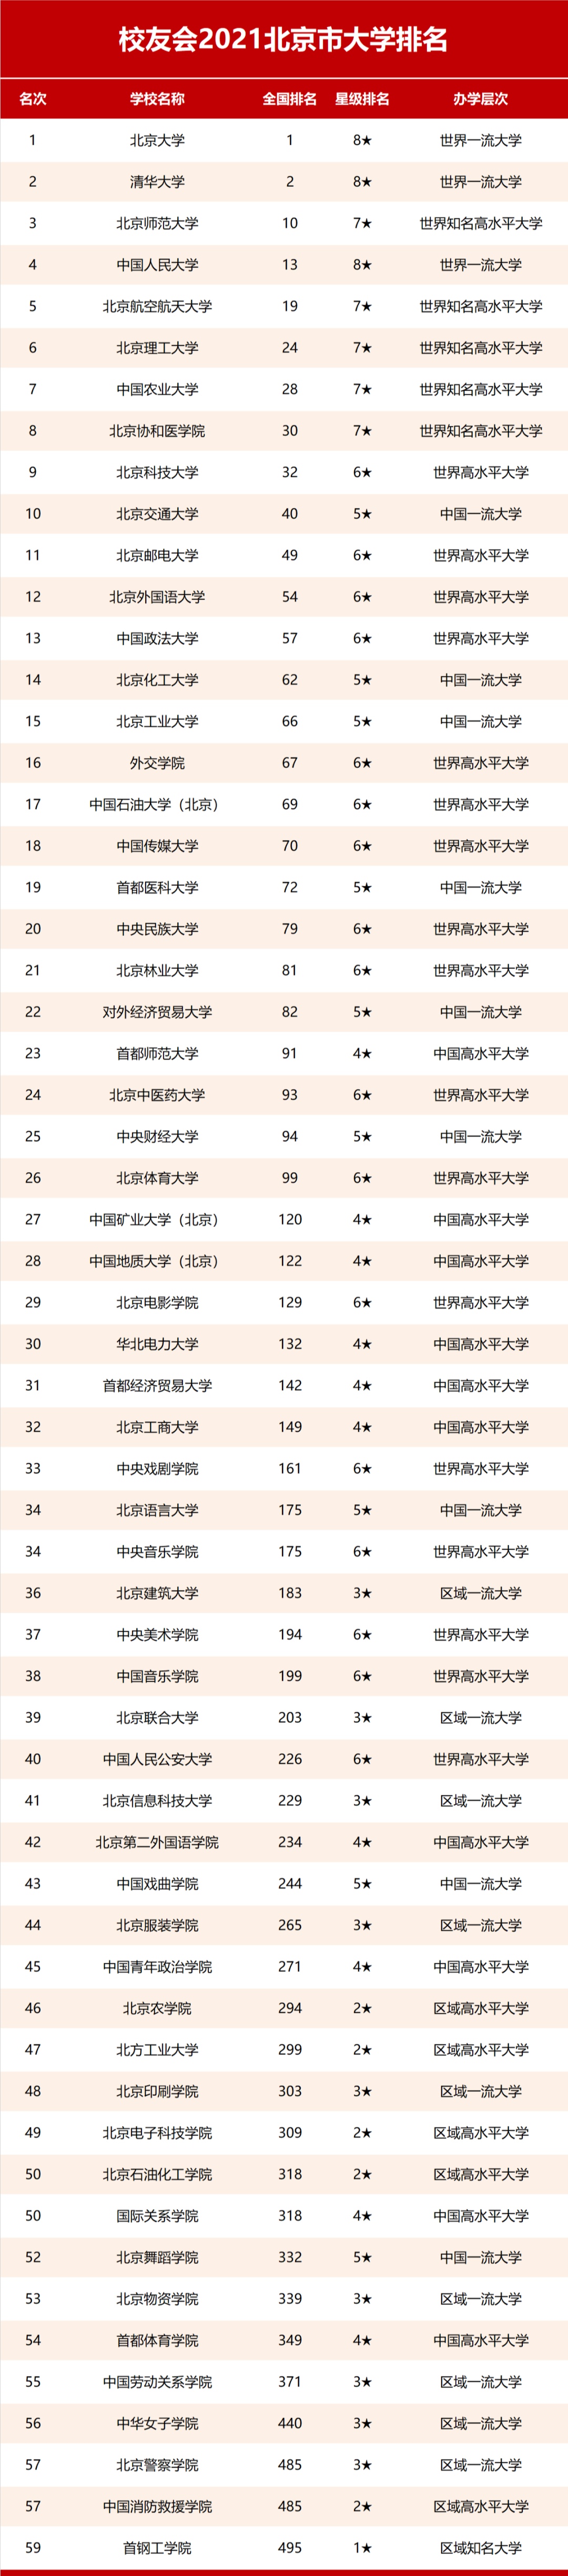 2021北京市大学排名!7所985领衔,北协和第8,26校进全国百强!